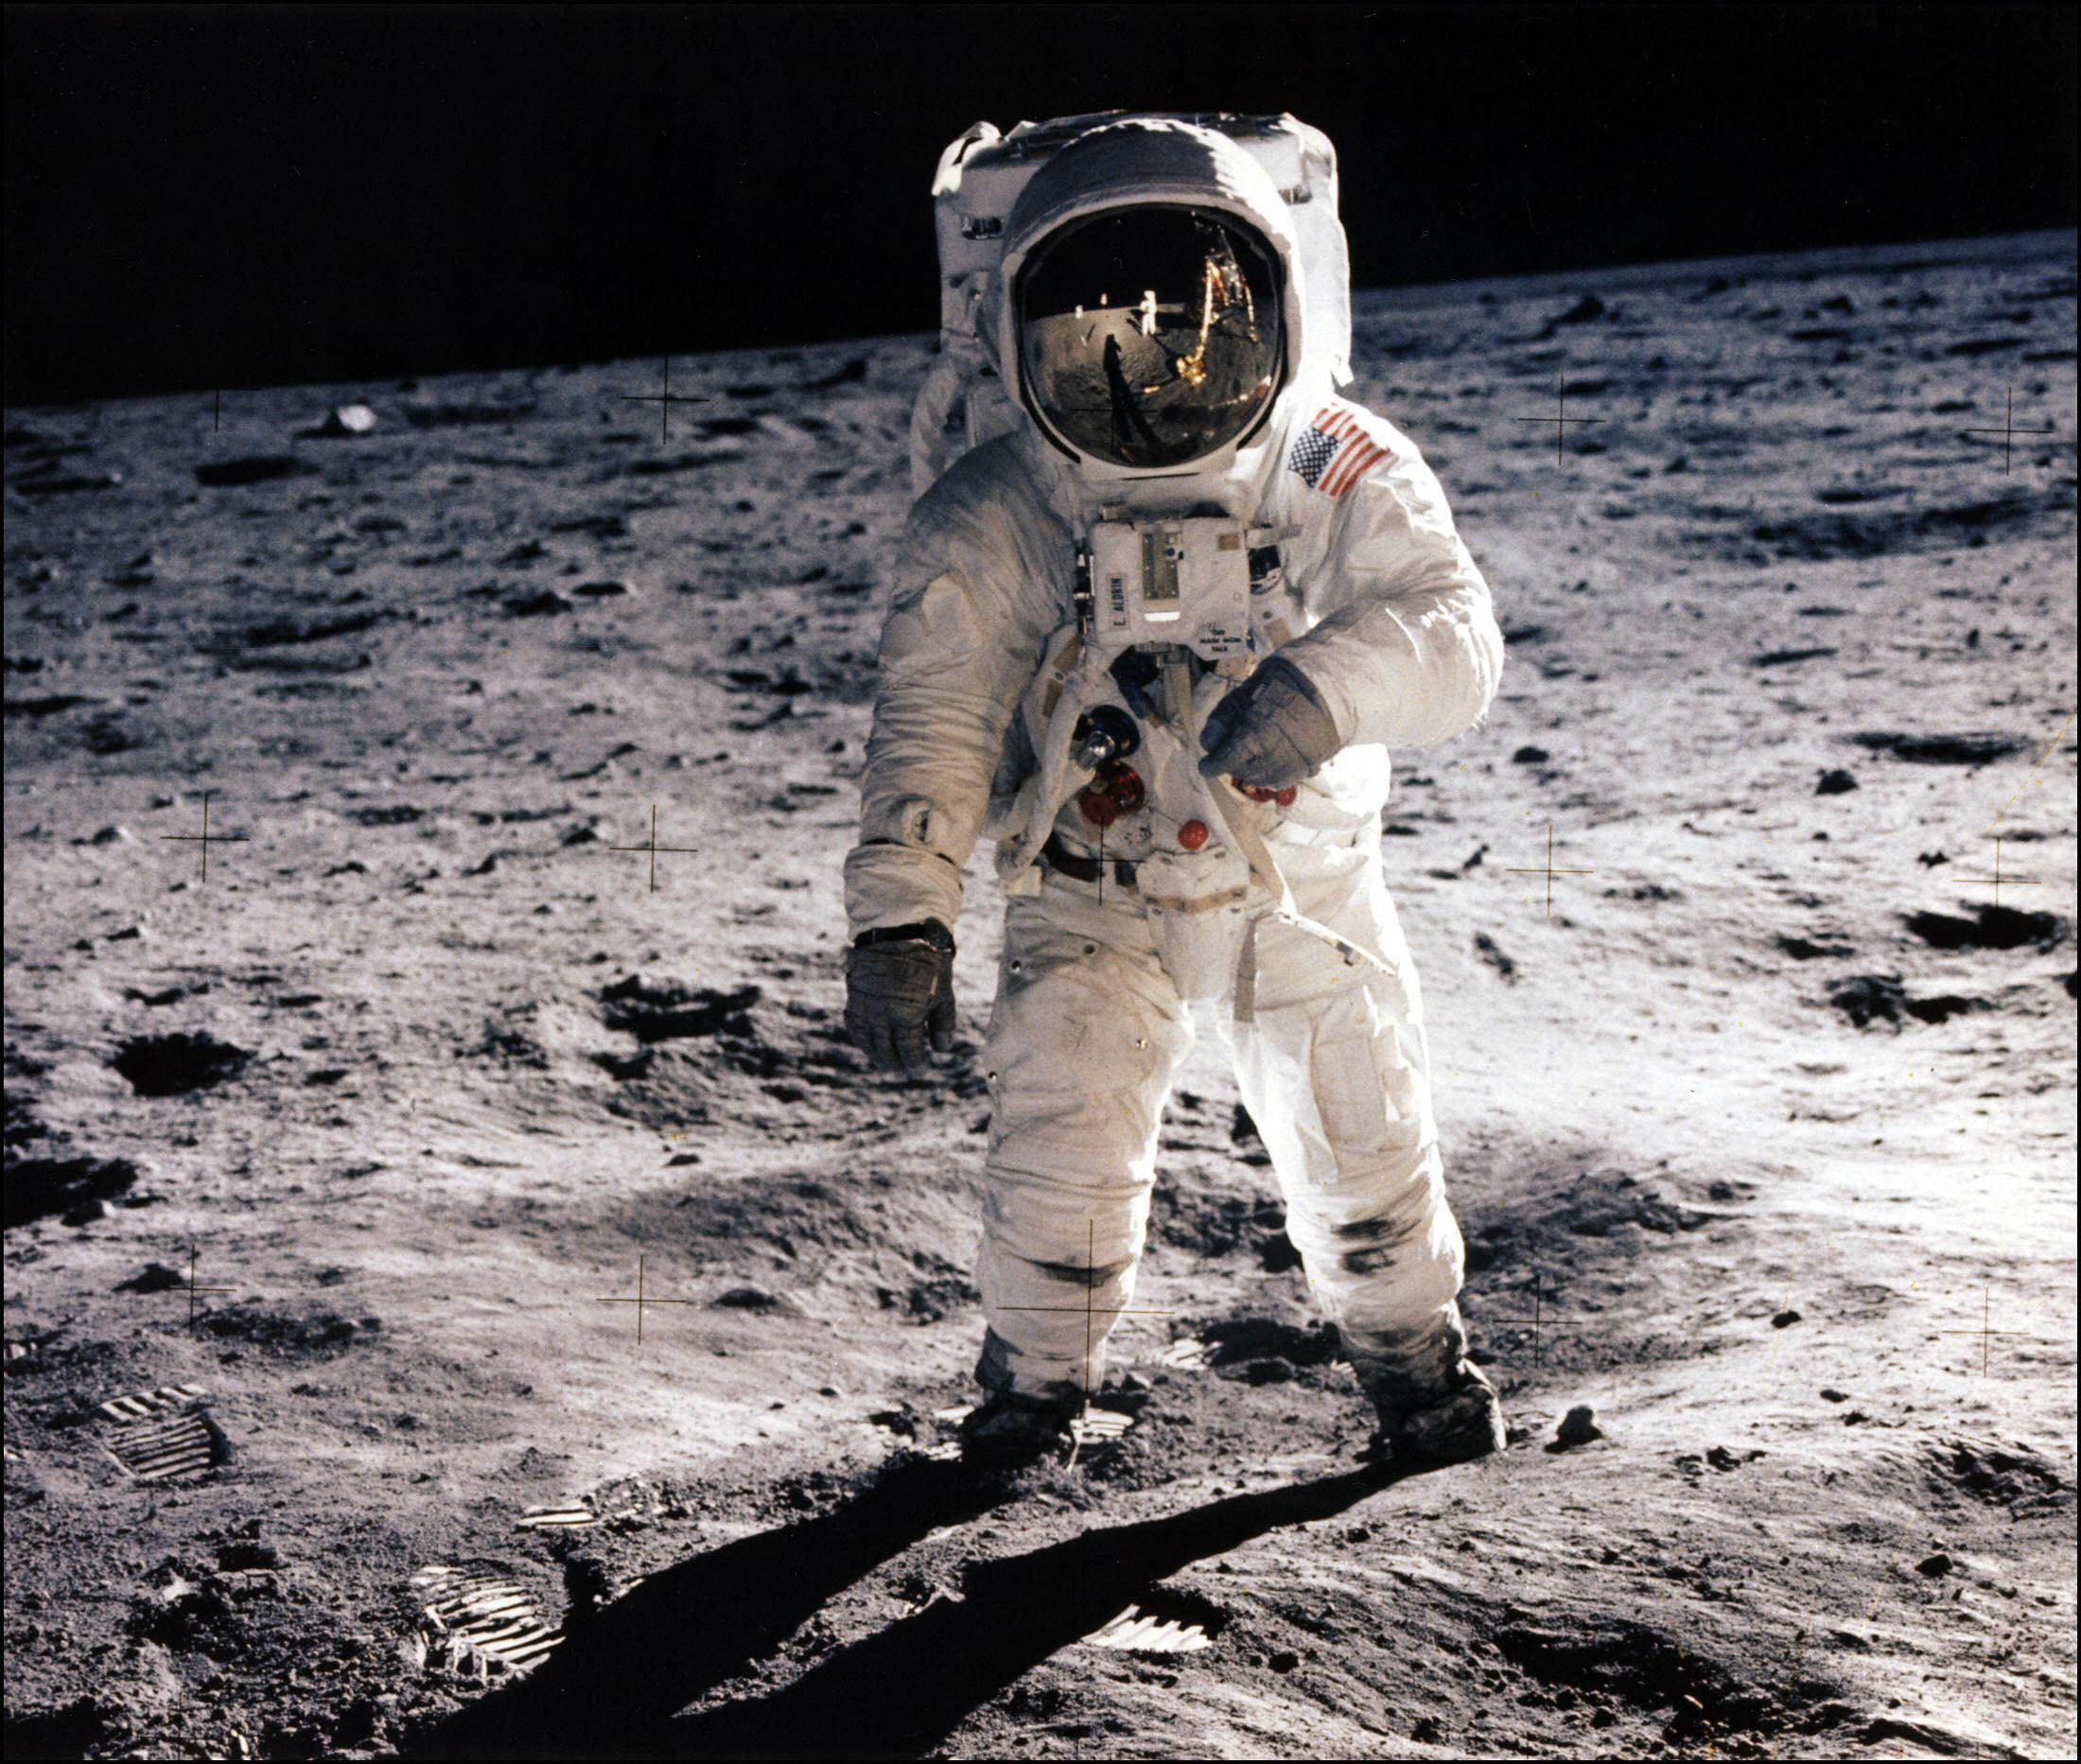 Le 20 juillet 1969, Neil Armstrong prend en photo Buzz Aldrin alors qu'ils viennent de poser le pied sur la Lune. AFP/Nasa